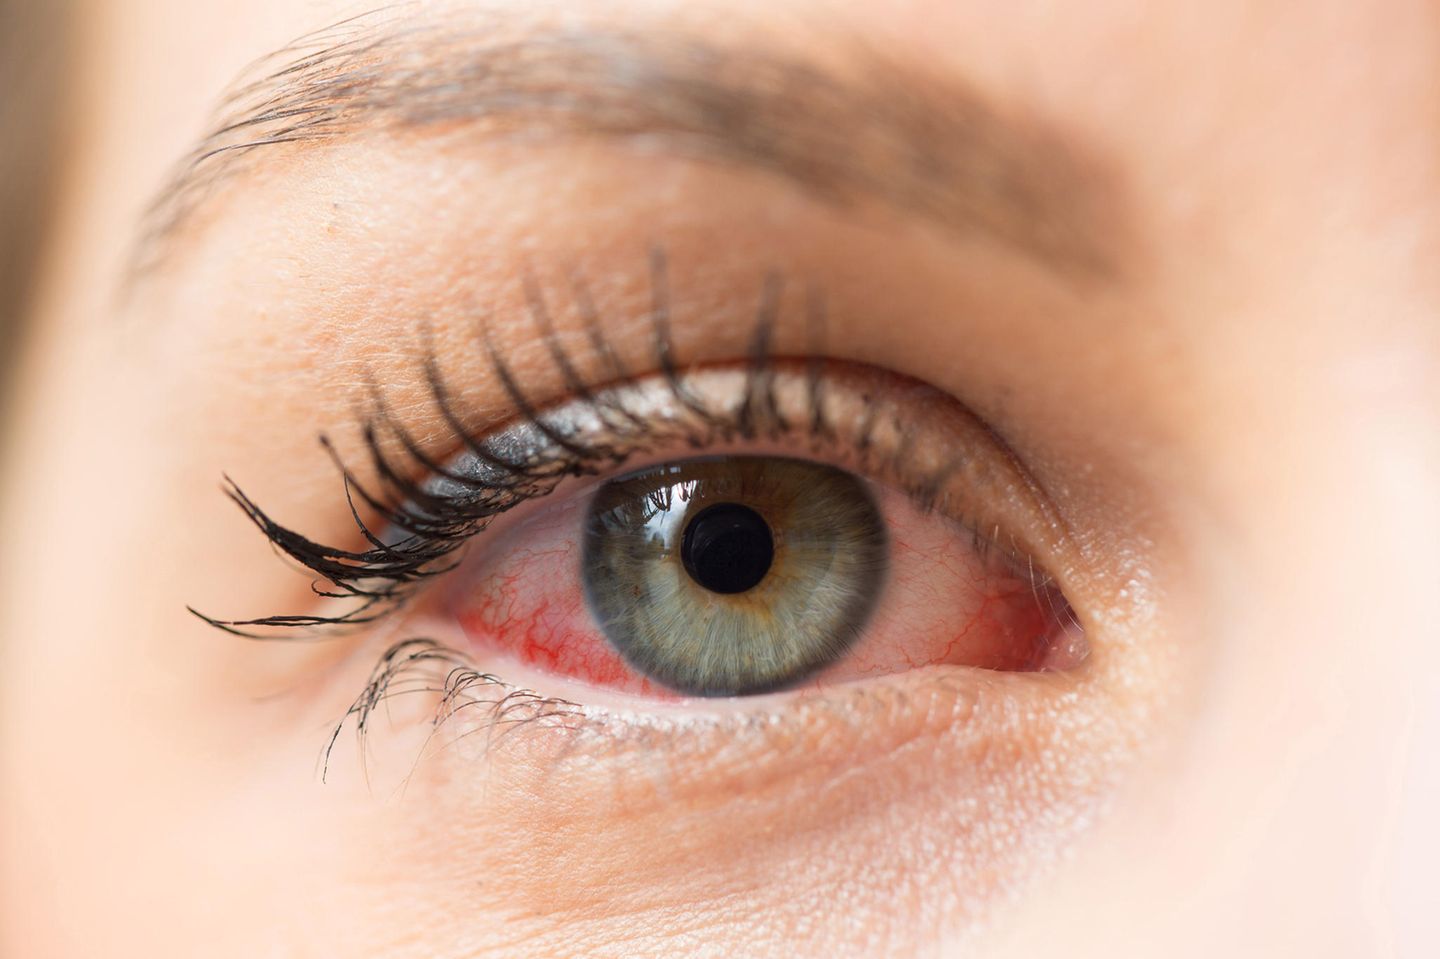 Eine allergische Reaktion kann sich durch gerötete und tränende Augen zeigen